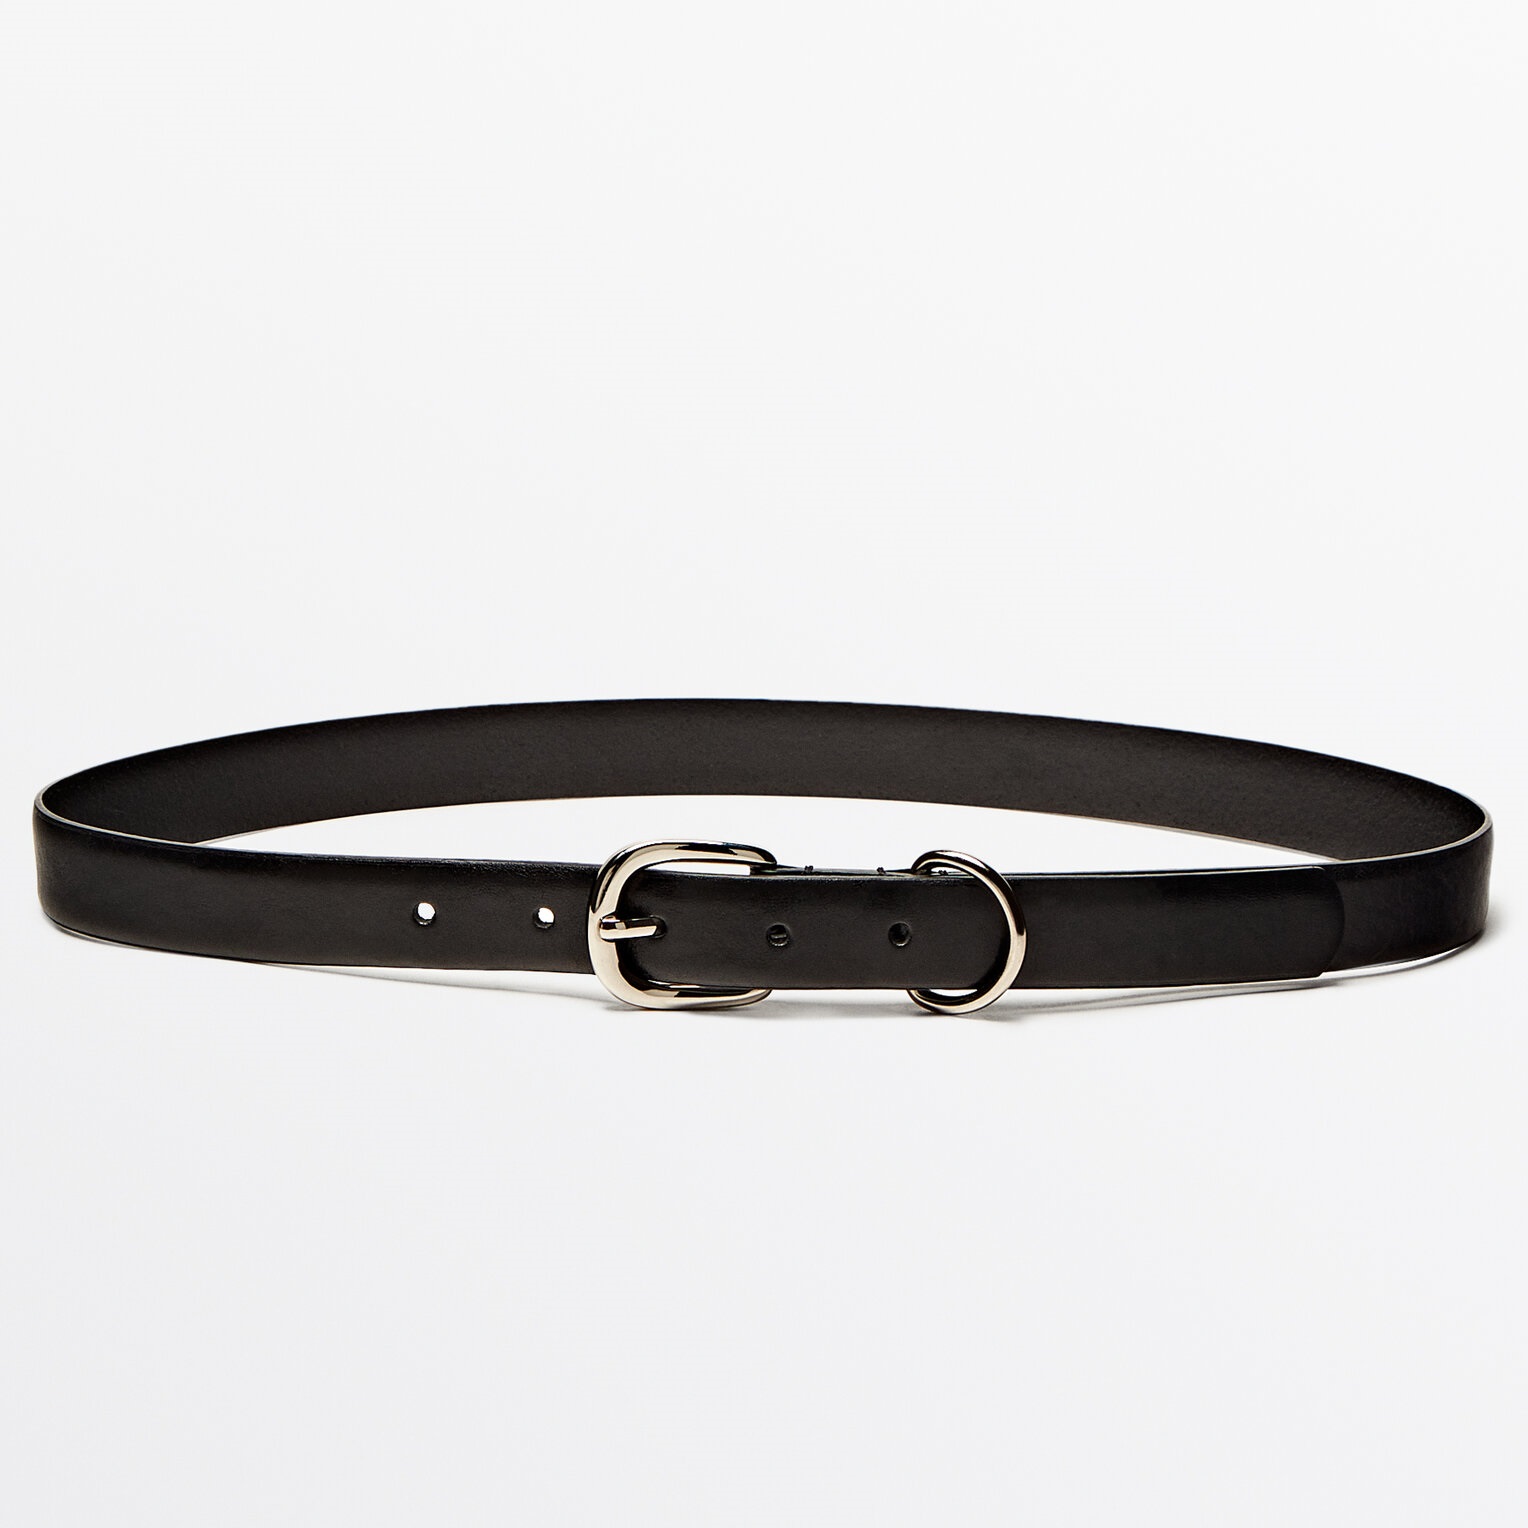 Ремень Massimo Dutti Leather With Metal Loop, черный ремень женский кожаный широкий с двойной петлей